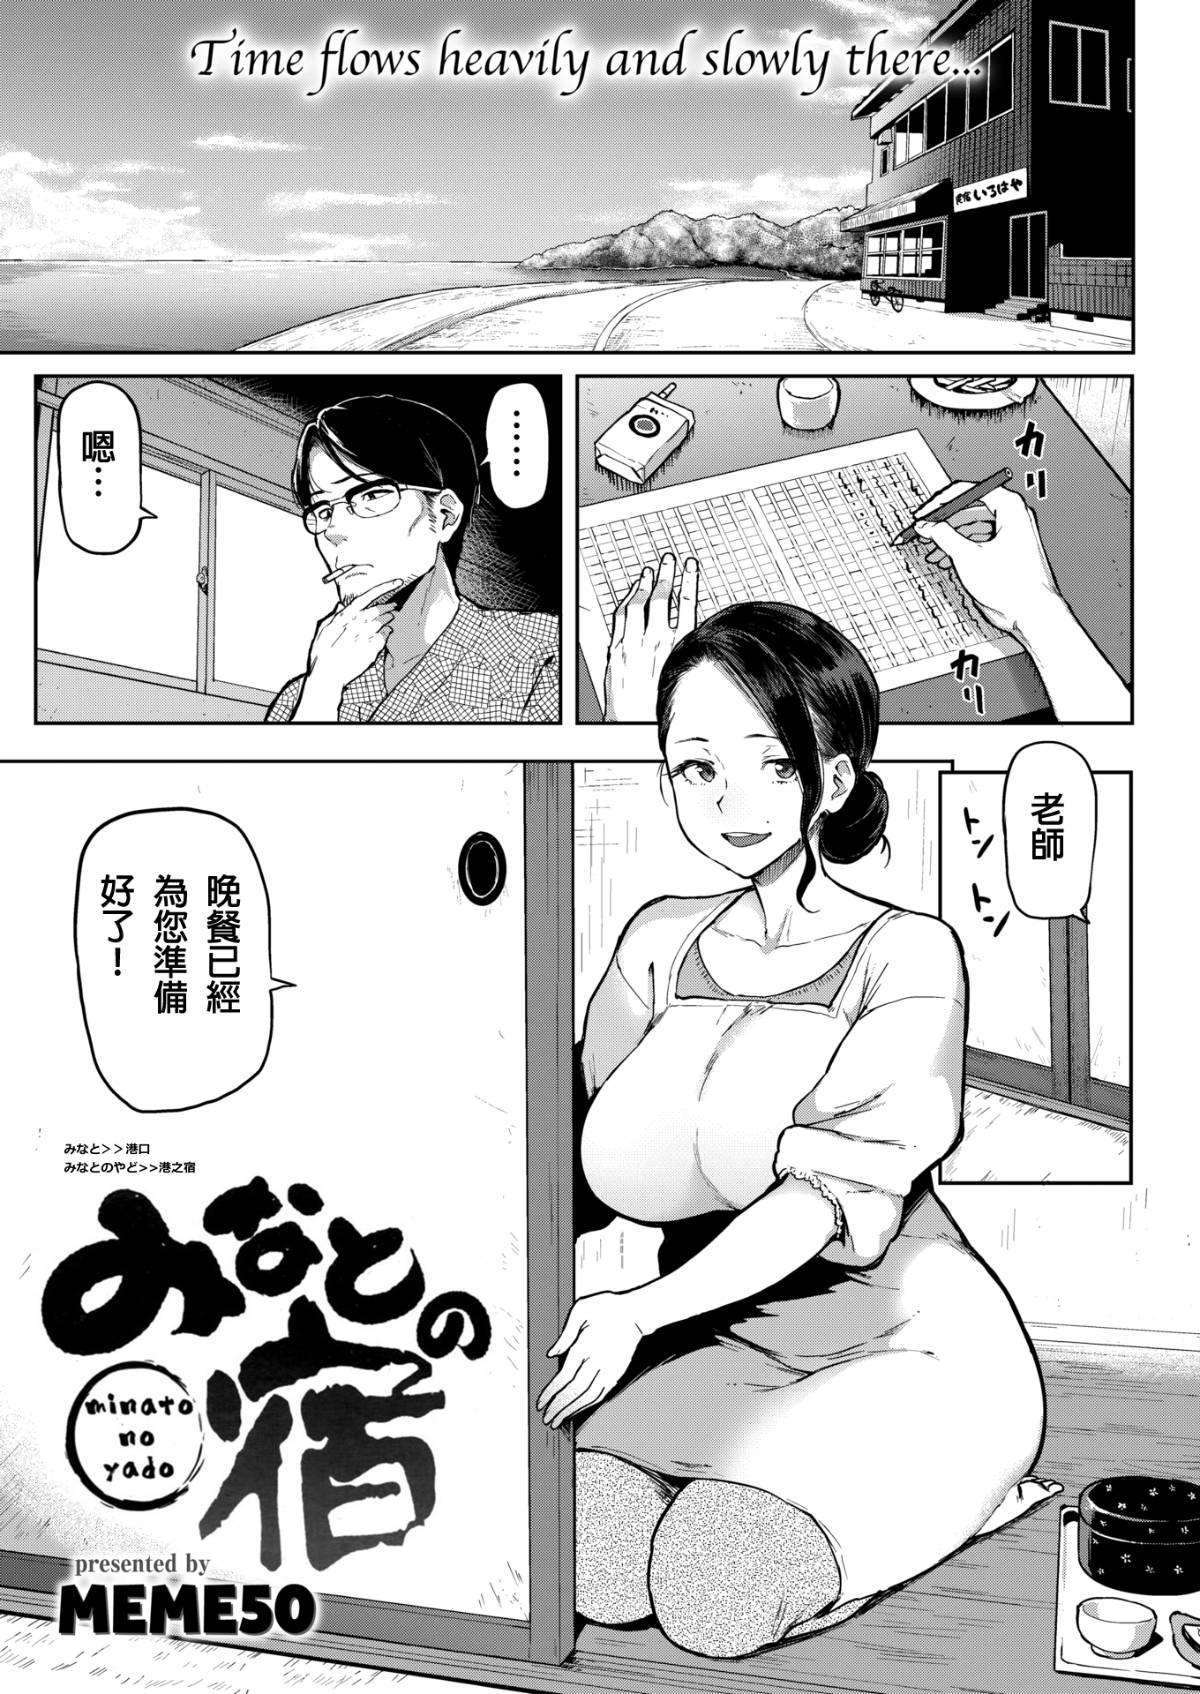 Soft Minato no Yado Marido - Page 1